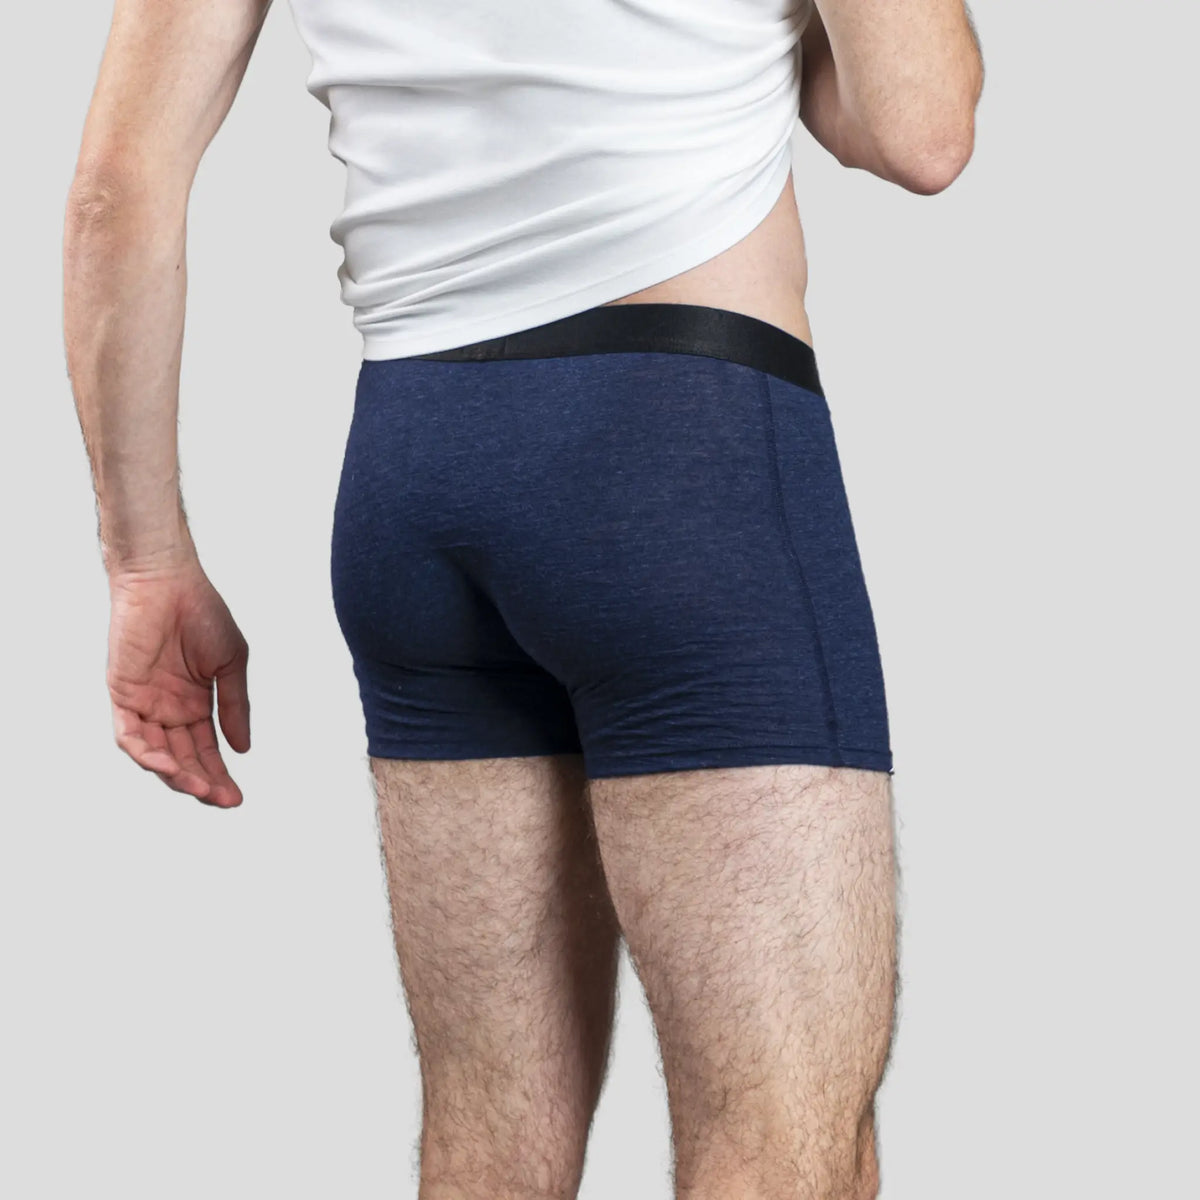 mens low moisture absorption boxer briefs color navy blue